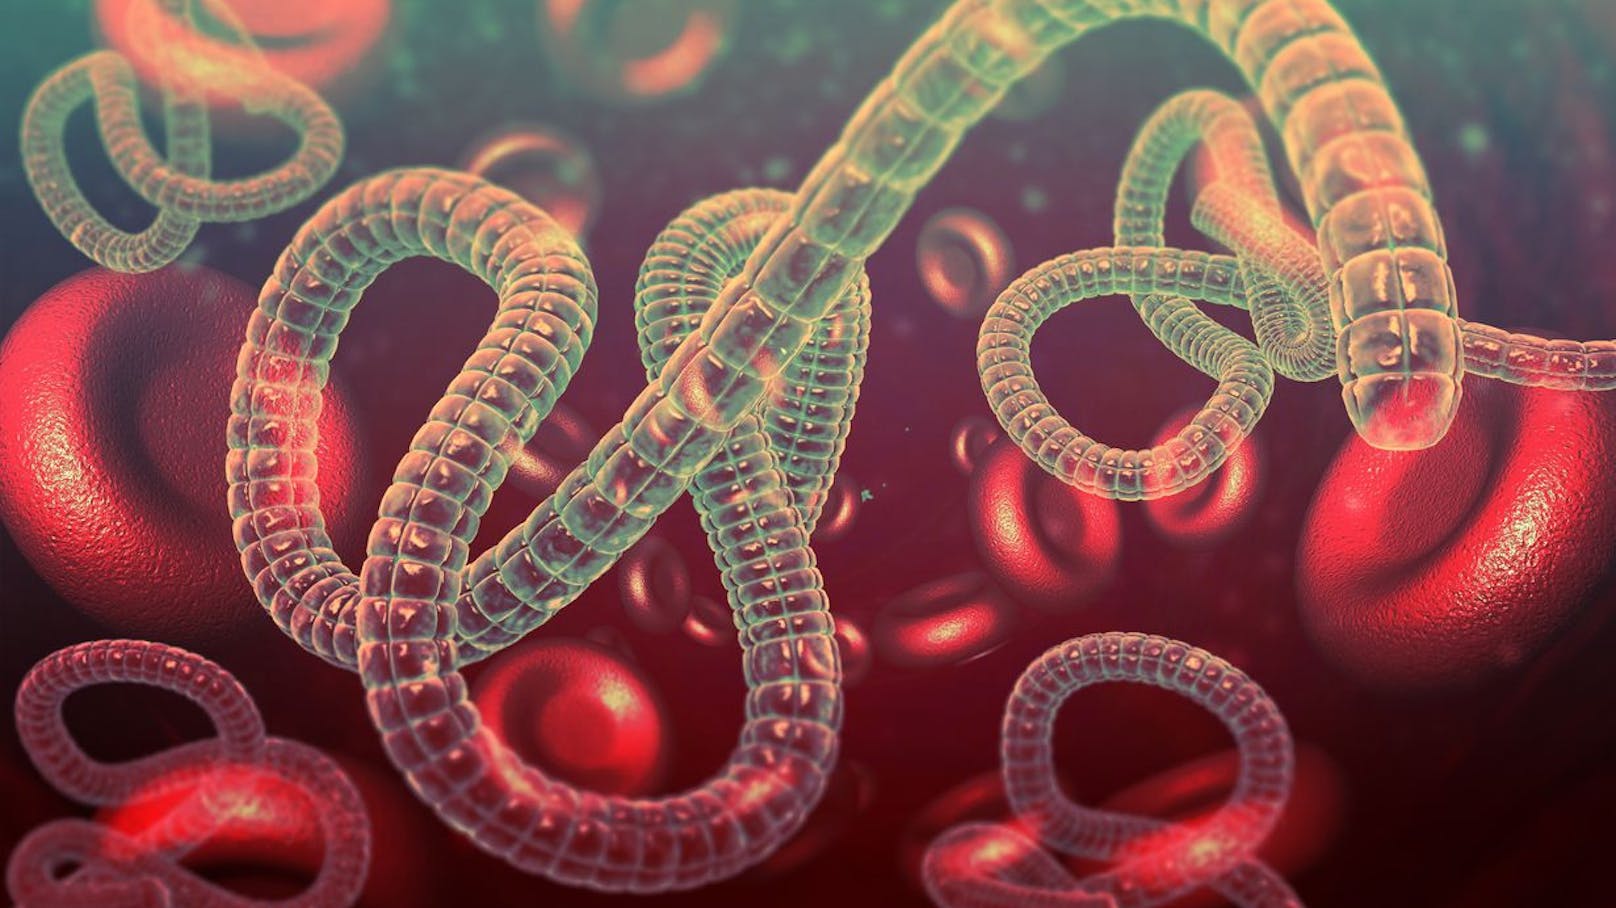 <strong>Platz 2: Ebola</strong> ist eine seltene und lebensbedrohliche Infektionskrankheit, die durch das Ebolavirus verursacht wird. Bislang gibt es keine wirksamen Medikamente dagegen, aber eine Schutzimpfung. Es vergehen im Mittel 8 bis 9 Tage zwischen der Ansteckung und dem Ausbruch. Symptome sind Hohes Fieber, Hautausschlag, Gliederschmerzen und schwere innere und äußere Blutungen. Im weiteren Verlauf von Ebola versagen häufig verschiedene Organe. Der Tod tritt oft schon nach wenigen Tagen ein.&nbsp;